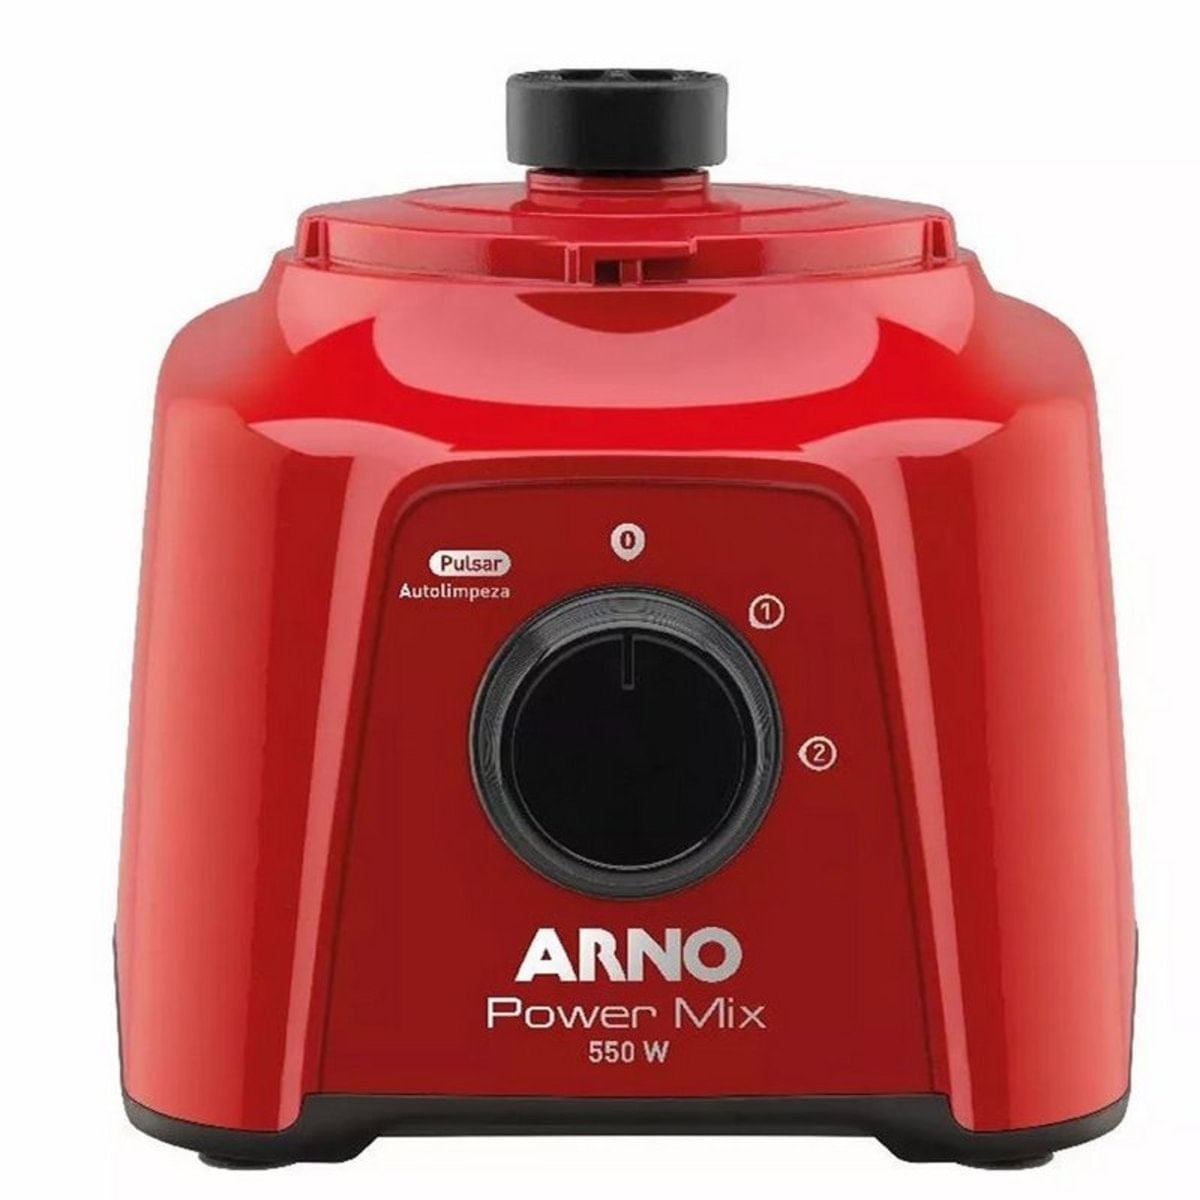 MV19861025_Liquidificador-Arno-2l-Power-Mix-550w-Laminas-Inox-Zelkrom_4_Zoom